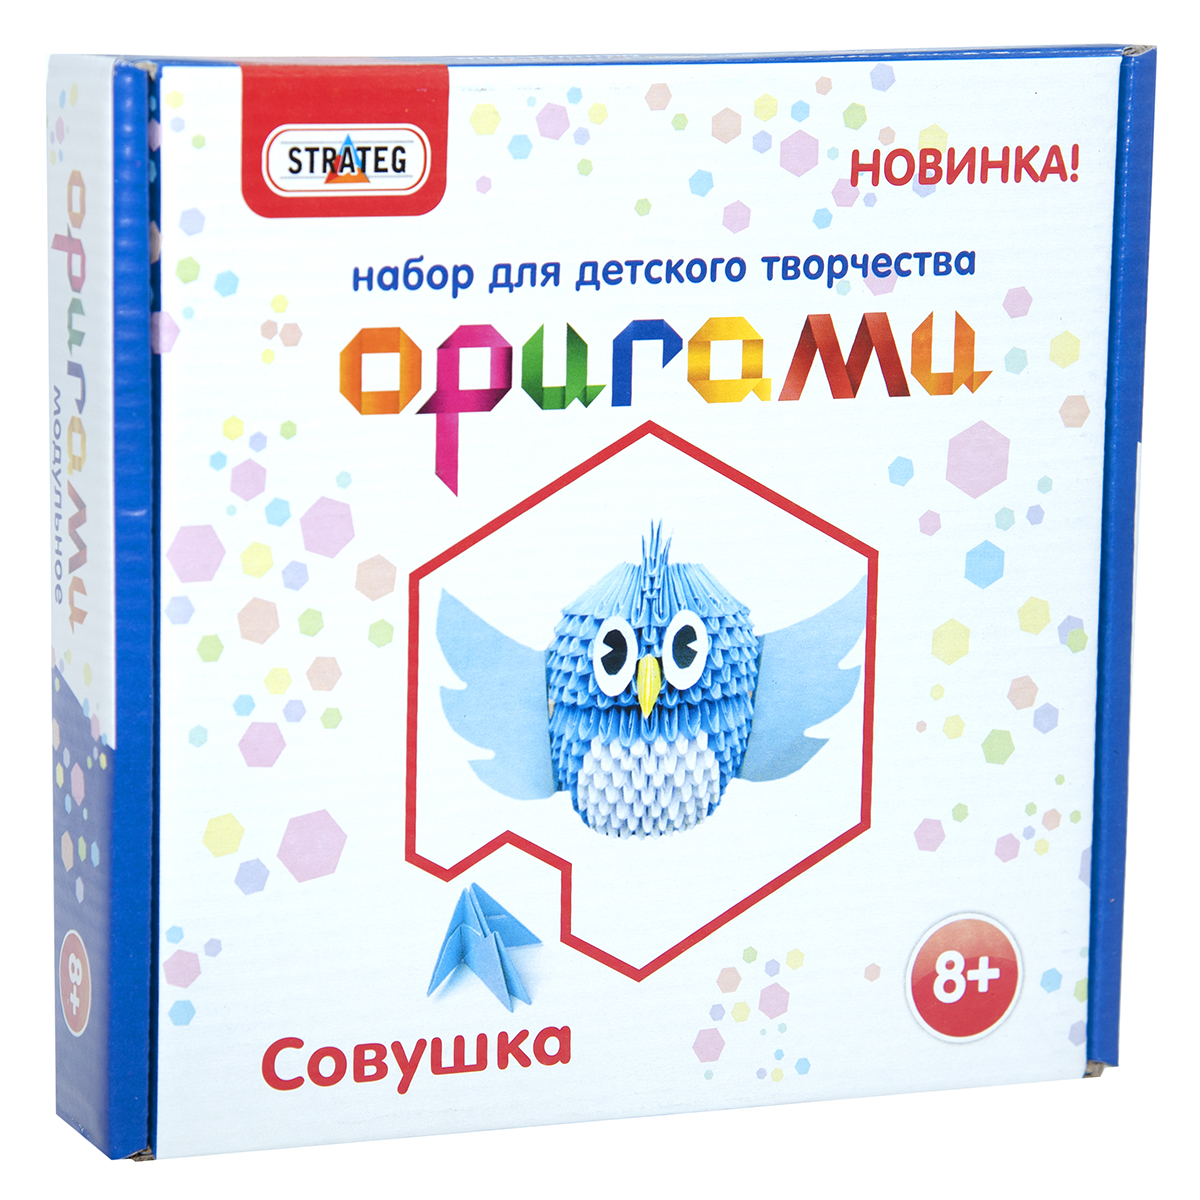 Модульное оригами Strateg Совушка на русском языке (203-5)